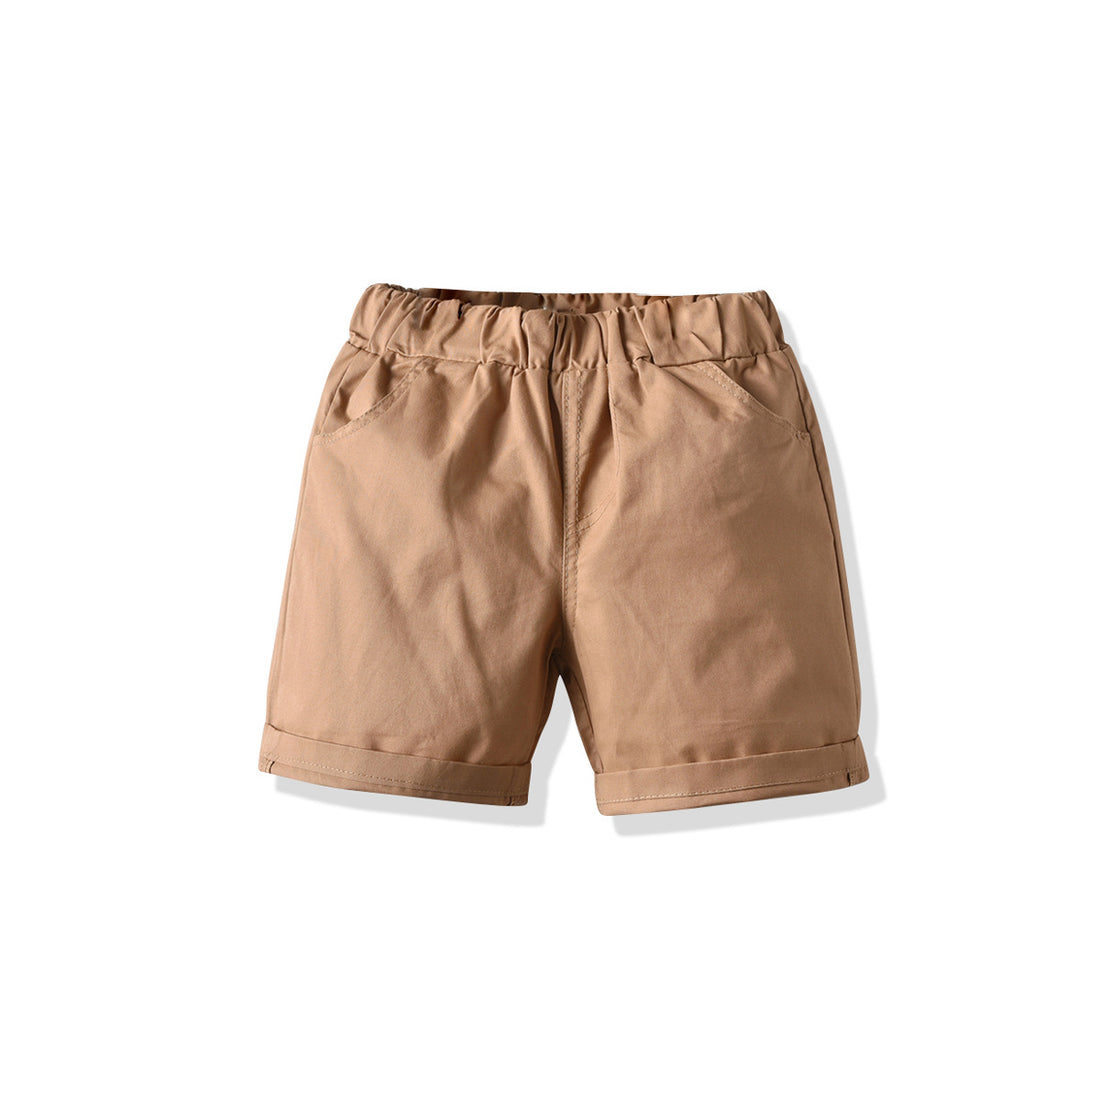 [502142-BROWN] - Celana Pendek Casual Anak Import - Motif Solid Color